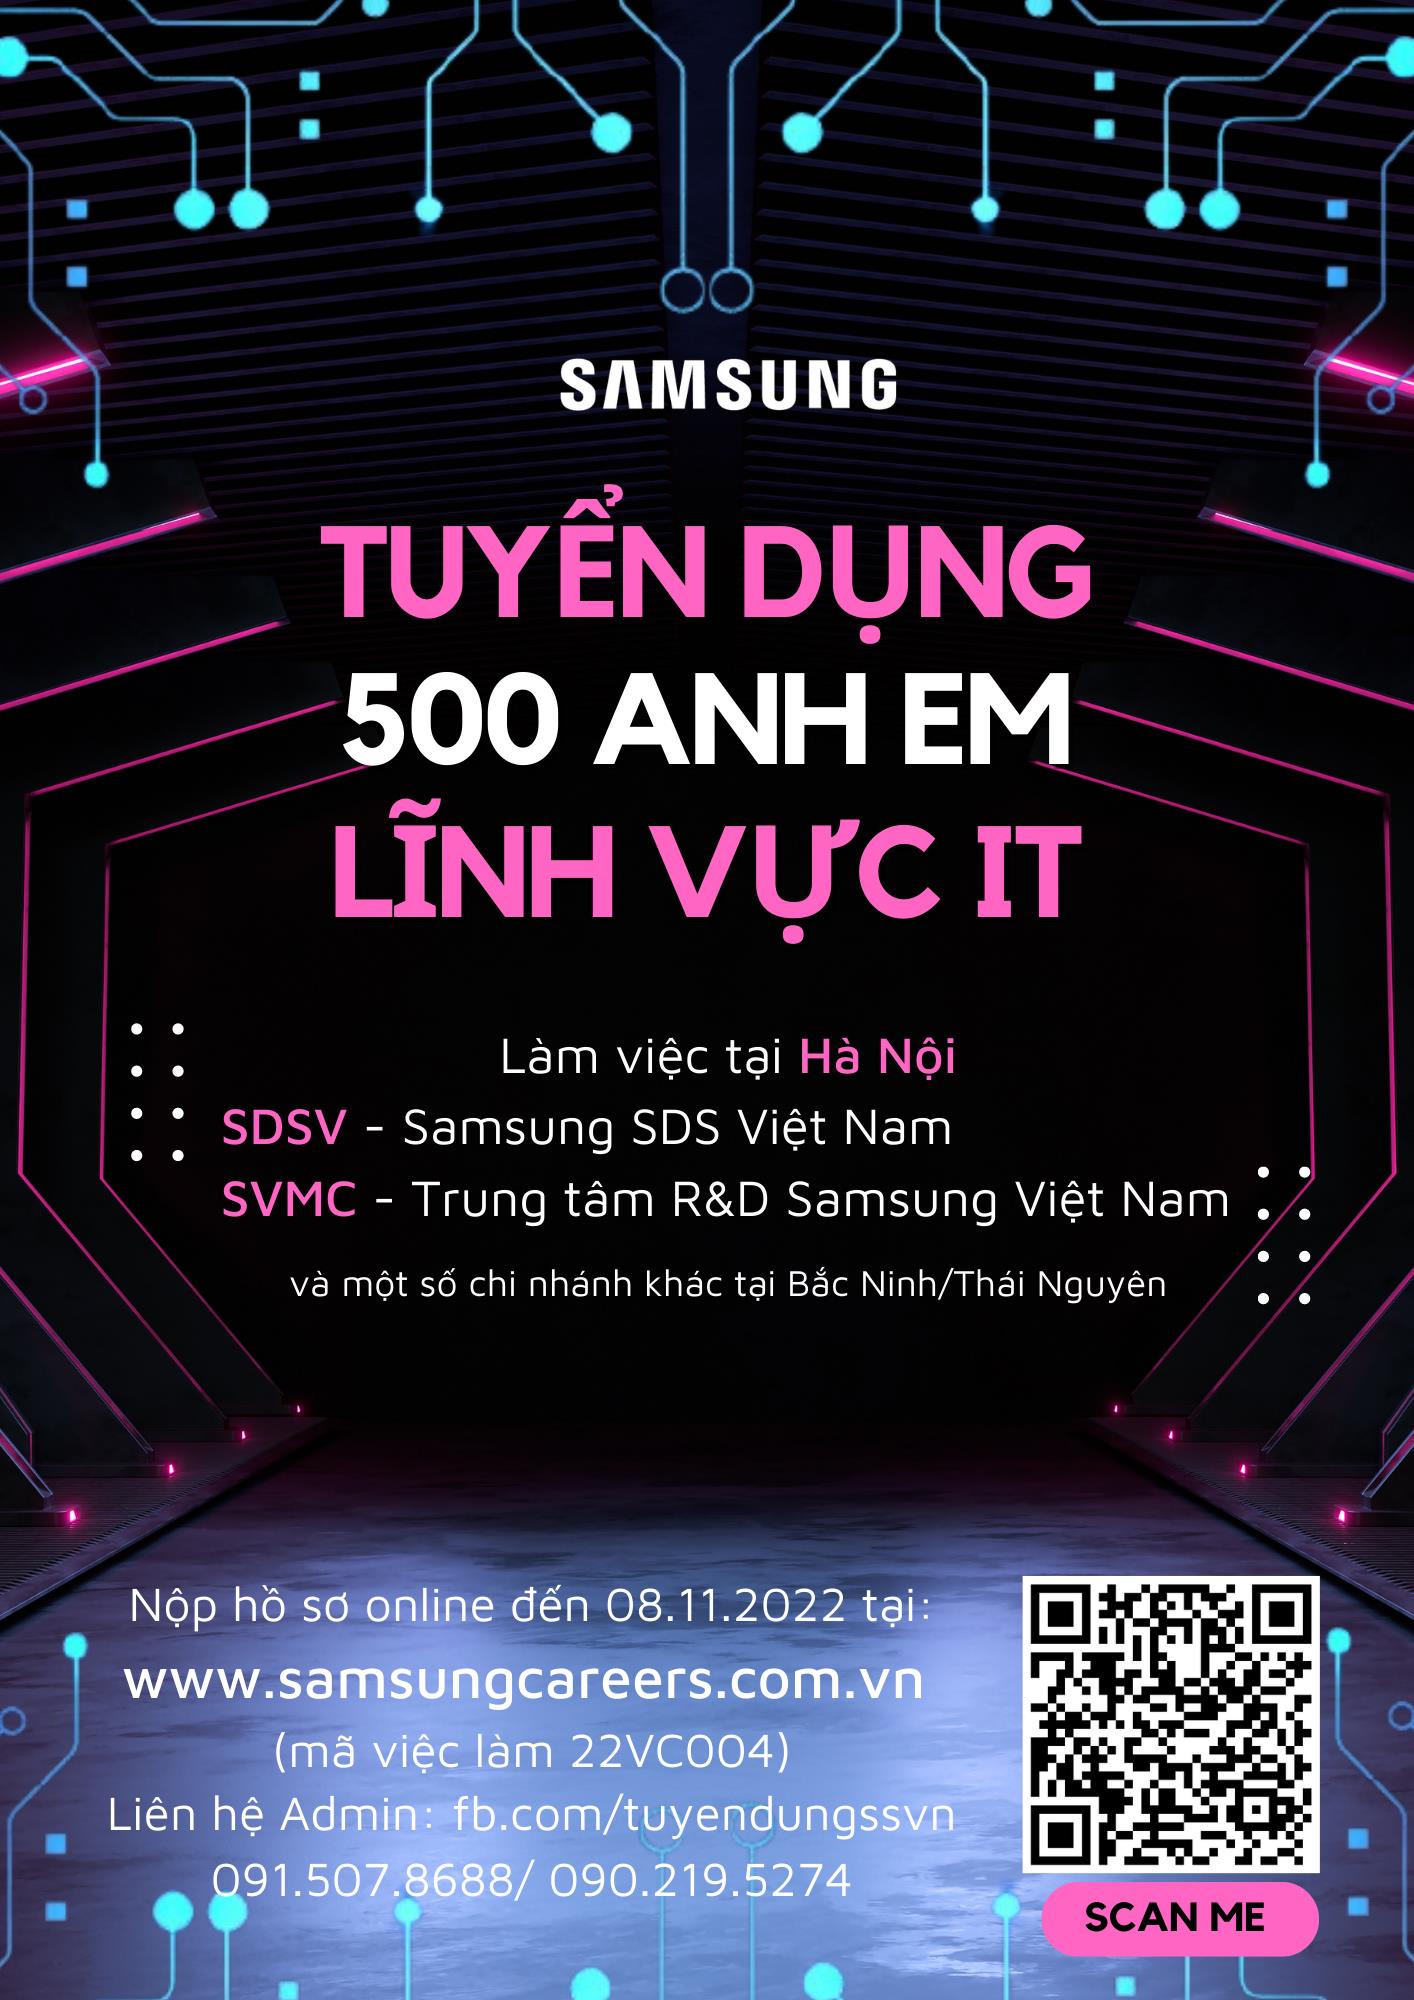 Thông báo tuyển dụng của Công ty TNHH Samsung Electronics Việt Nam